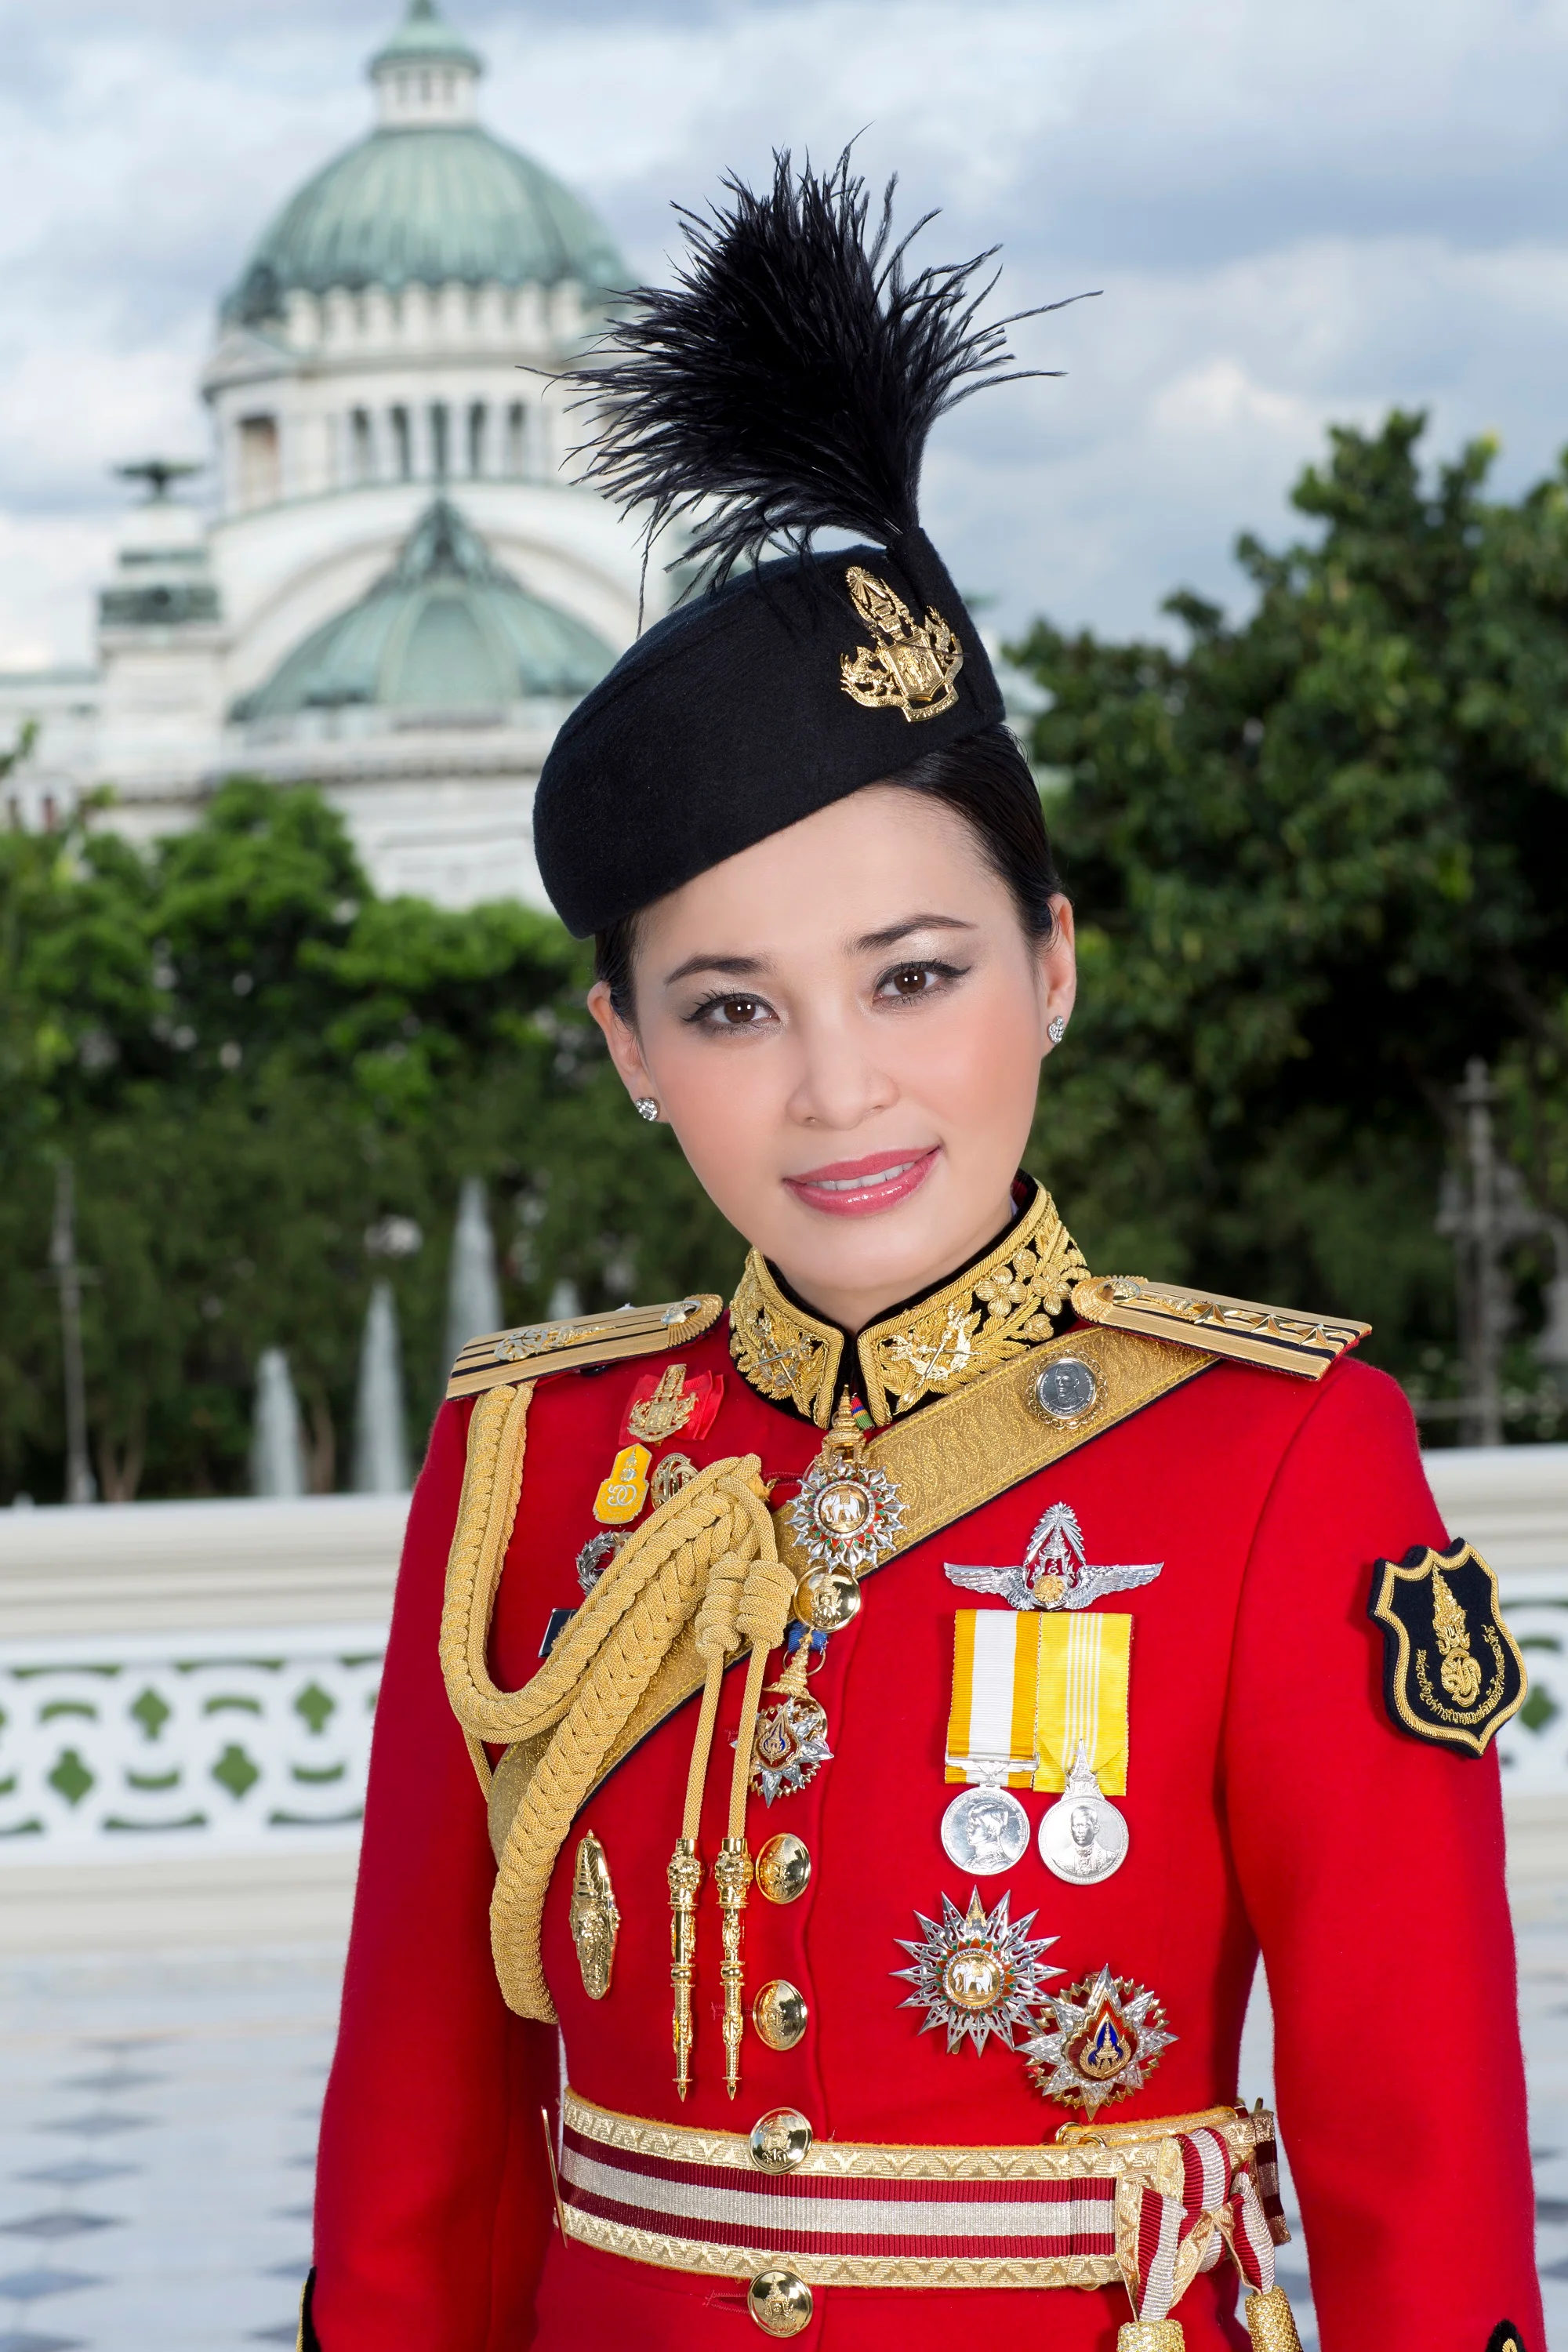 З’явилися перші офіційні фото королеви Таїланду, і вони зовсім не схожі на портрет Меган - фото 434522